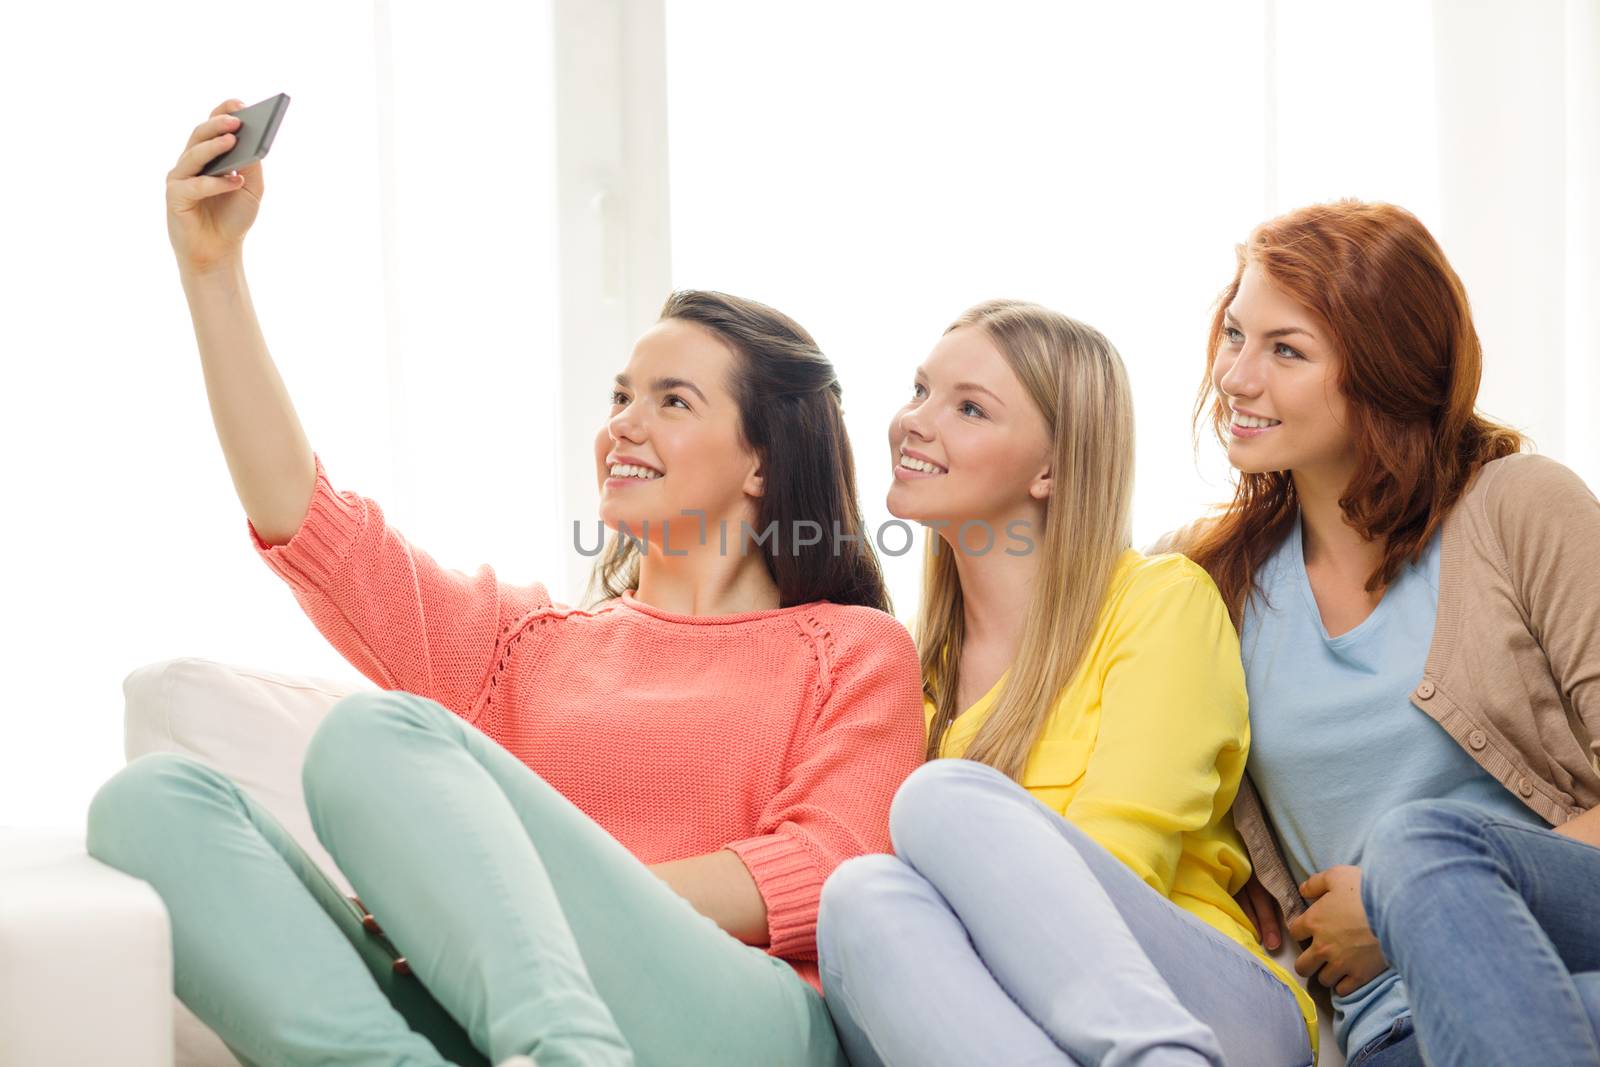 teenage girls taking selfie with smartphone by dolgachov